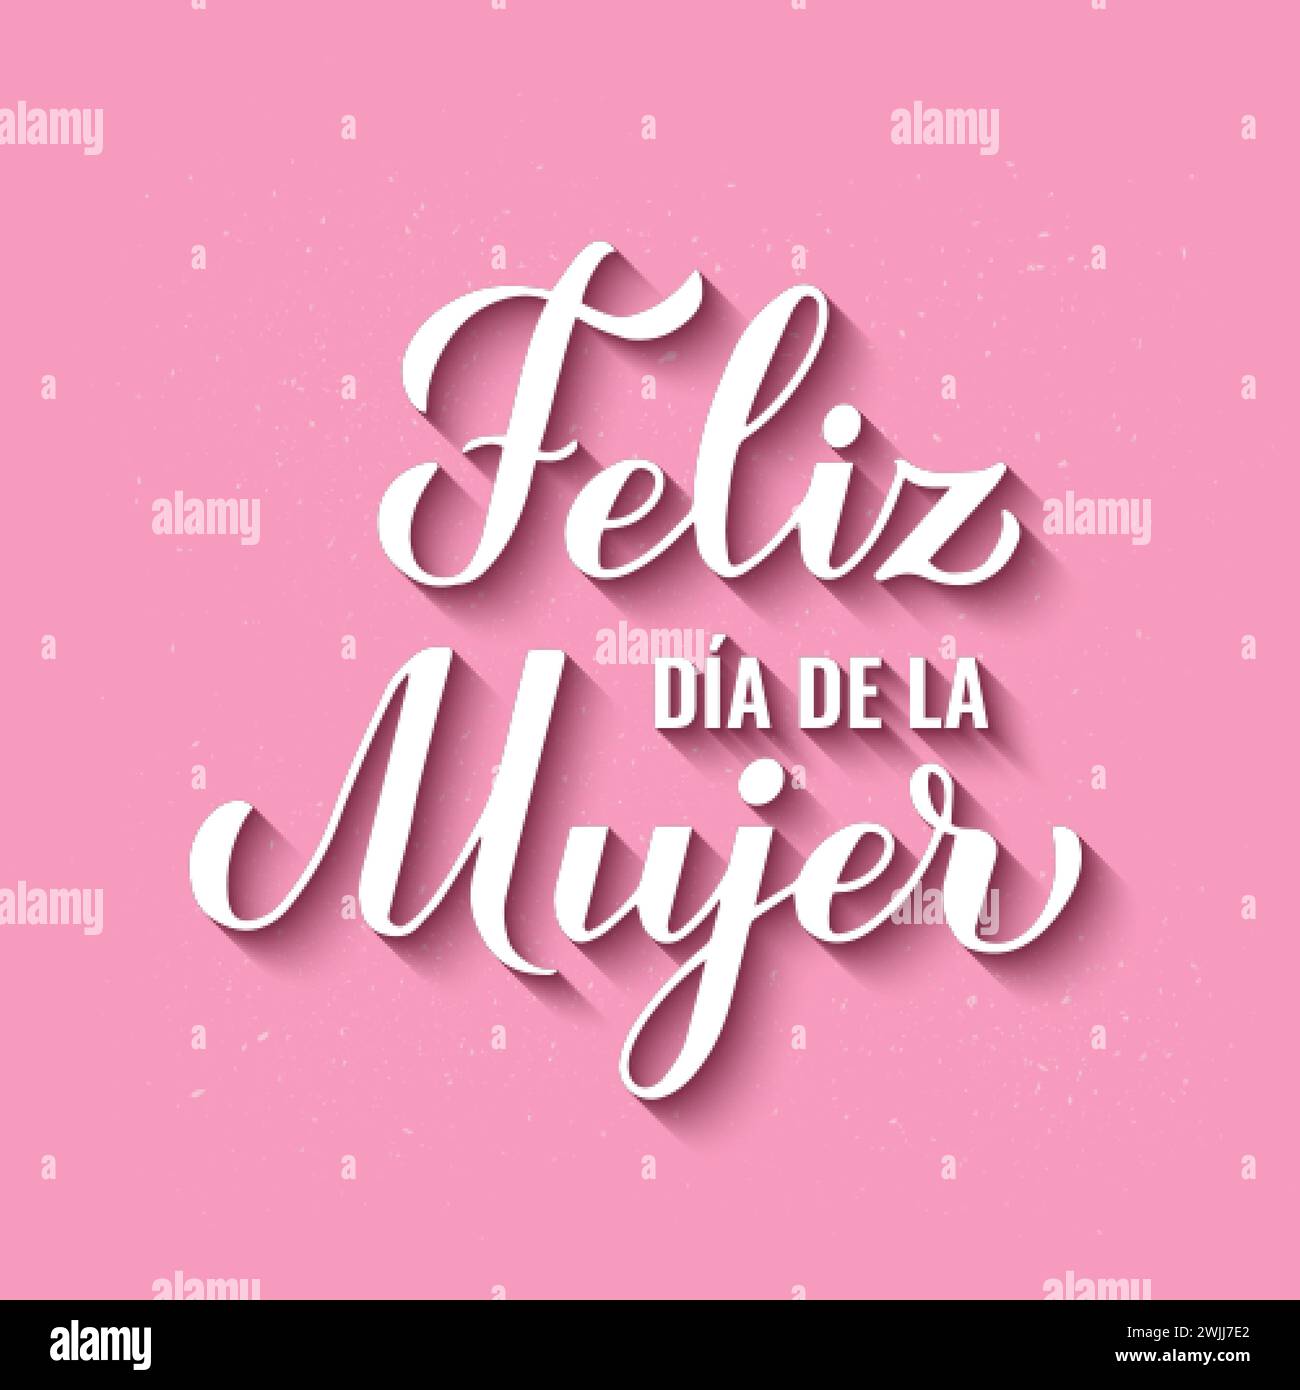 Feliz Dia de la Mujer - Happy Womens Day auf Spanisch. Kalligraphie-Handschrift auf rosafarbenem Hintergrund. Poster zur Typografie des Internationalen Frauentages. Vektor Stock Vektor